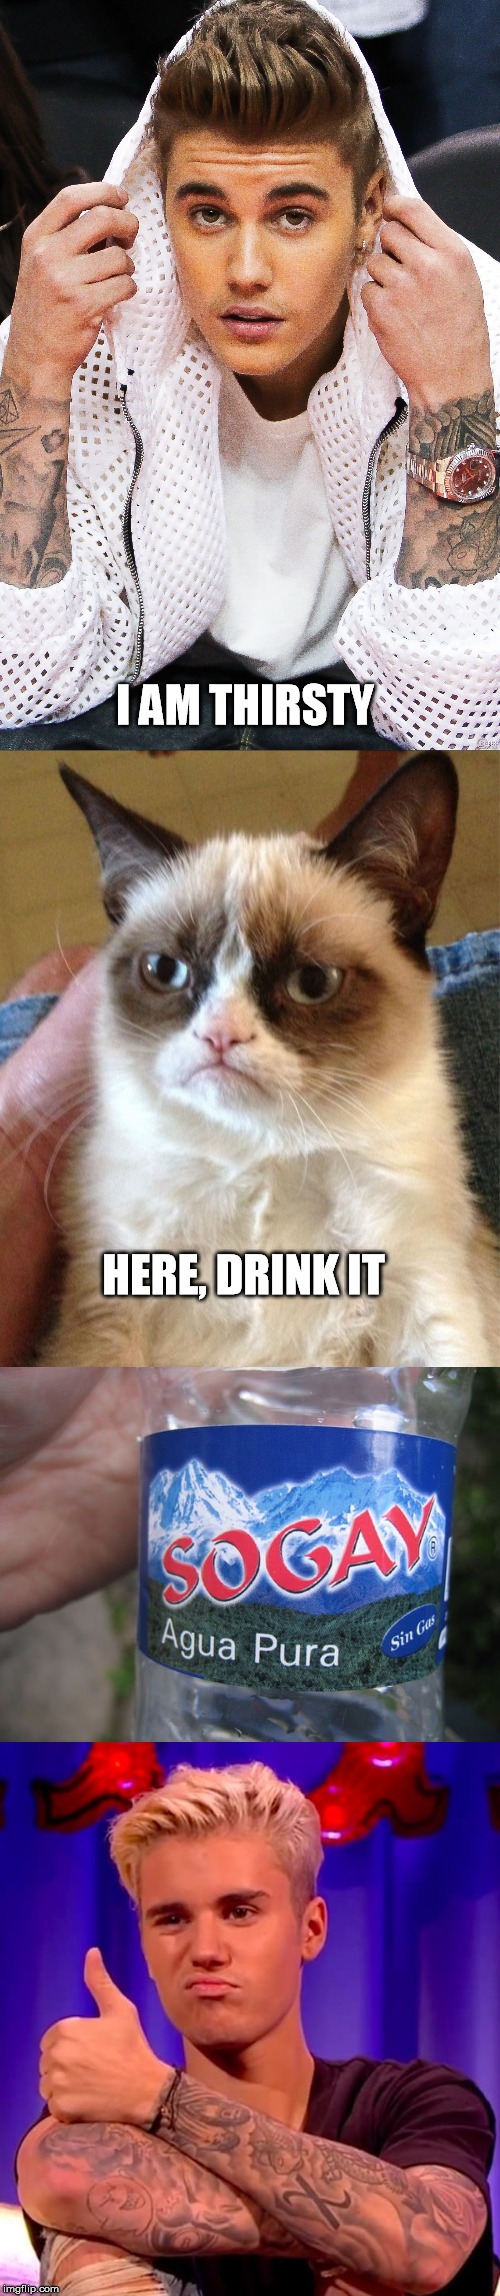 grumpy cat meme justin bieber